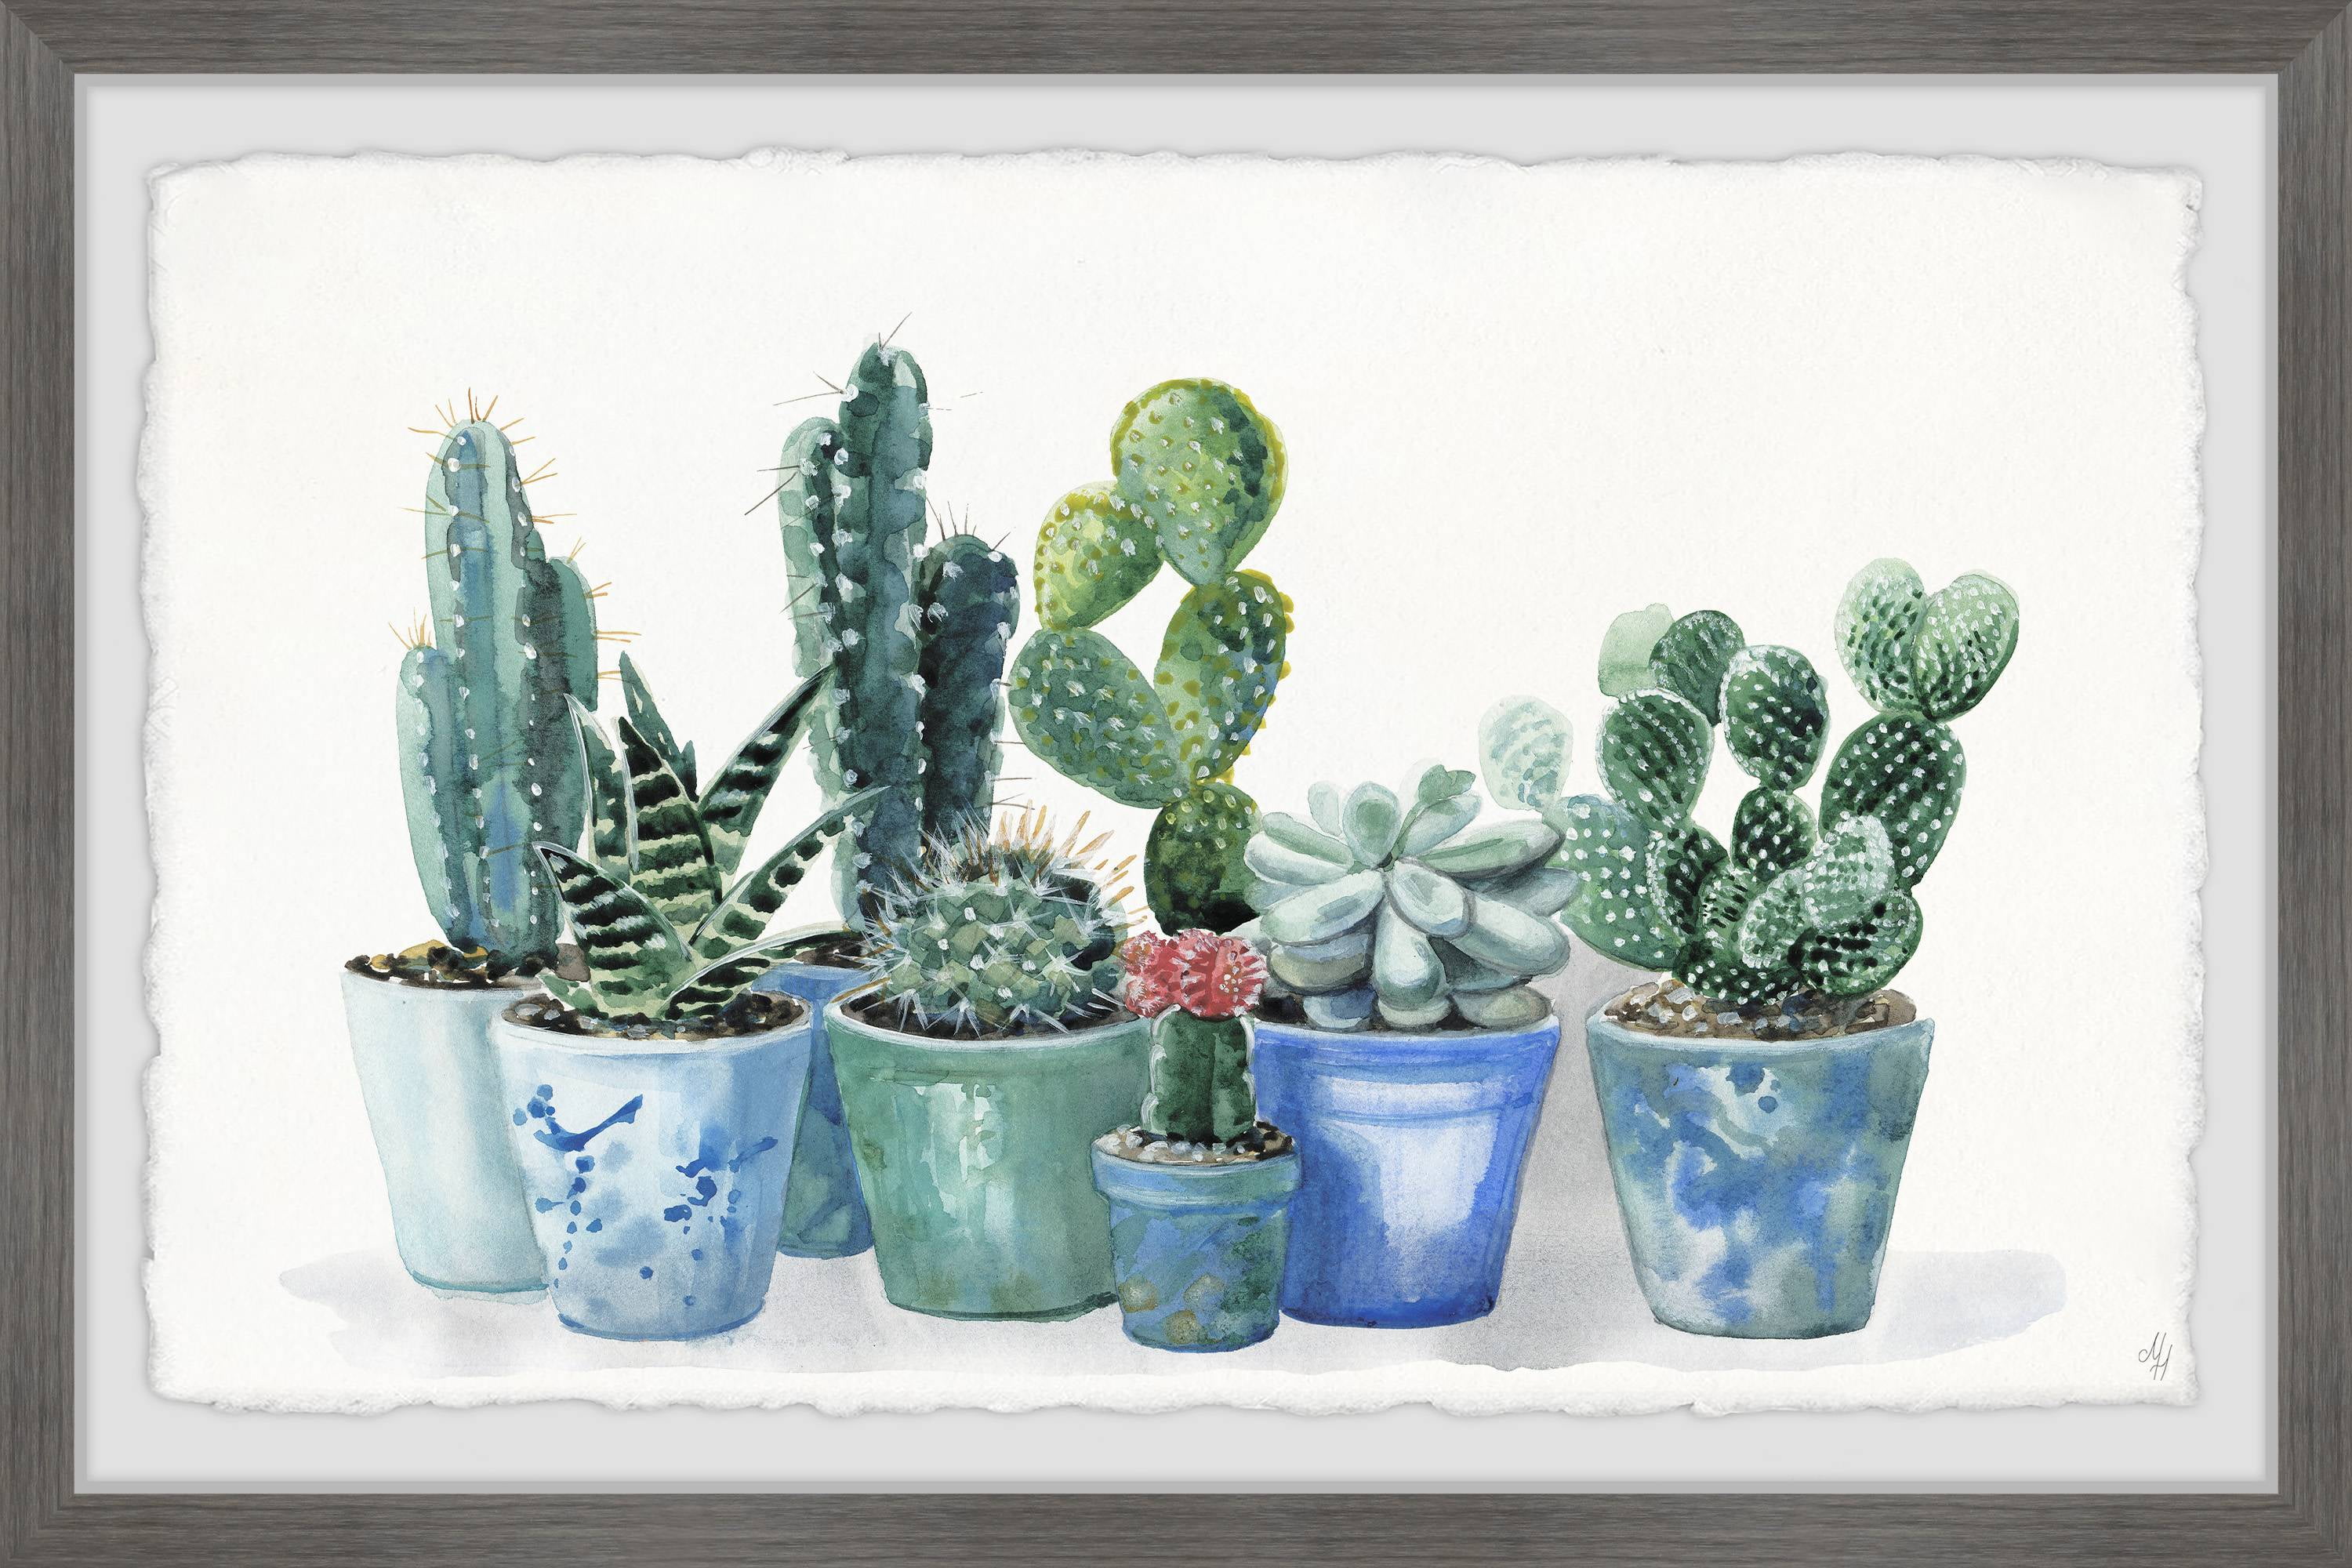 Ceramic Green Cactus Decor – Arte Attic